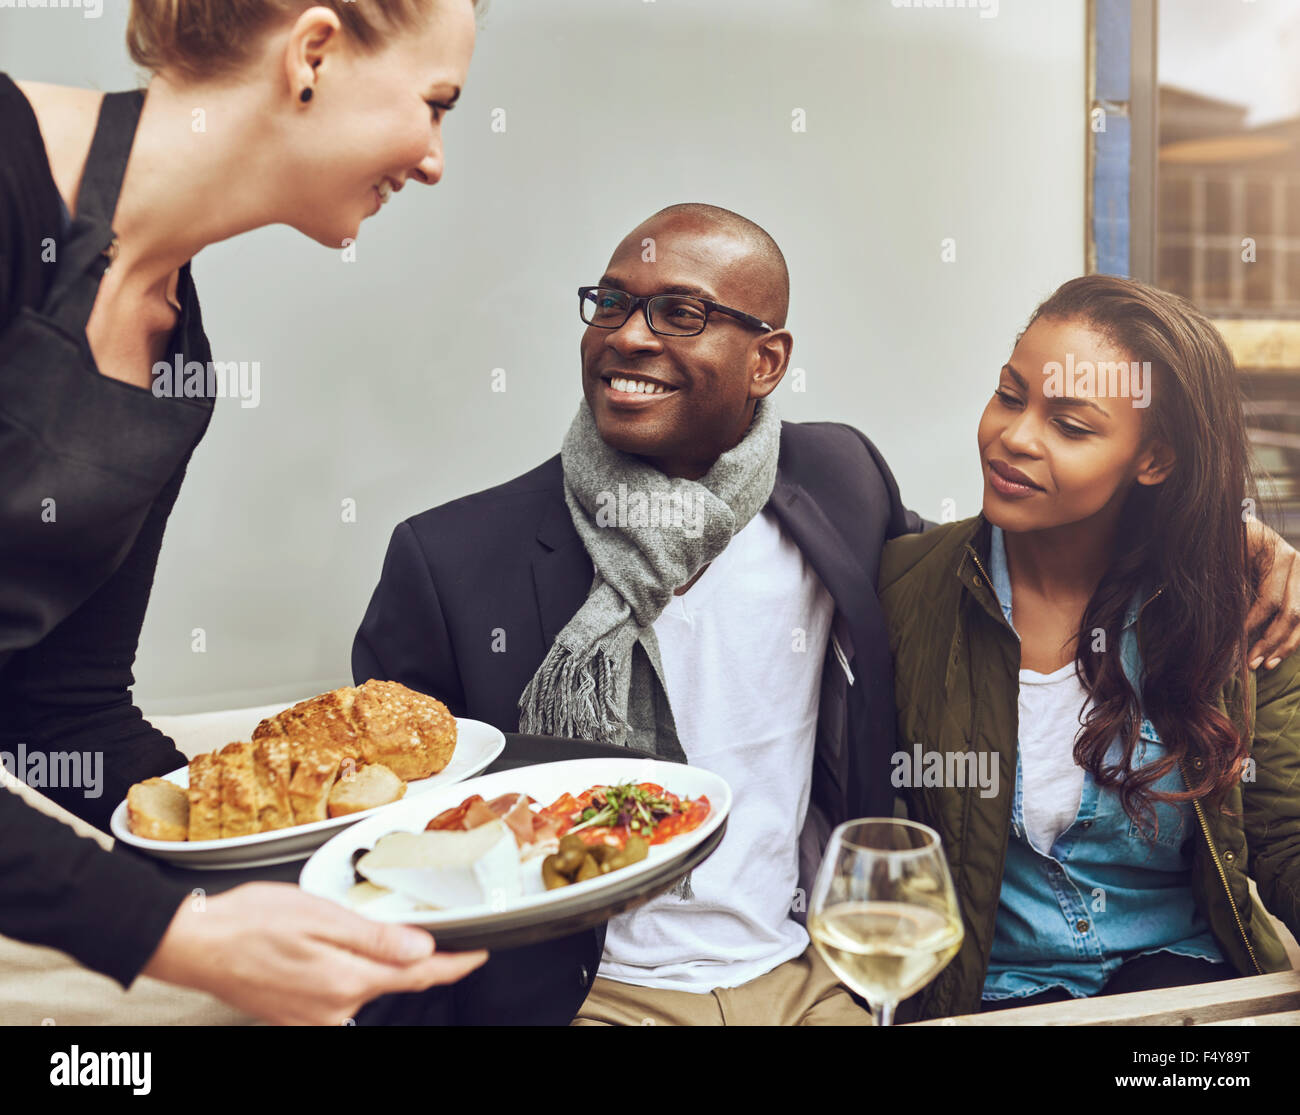 Romantico giovane americano africano giovane seduto a braccetto essendo servita la cena da una cameriera come essi sedersi a un tavolo ristorante Foto Stock